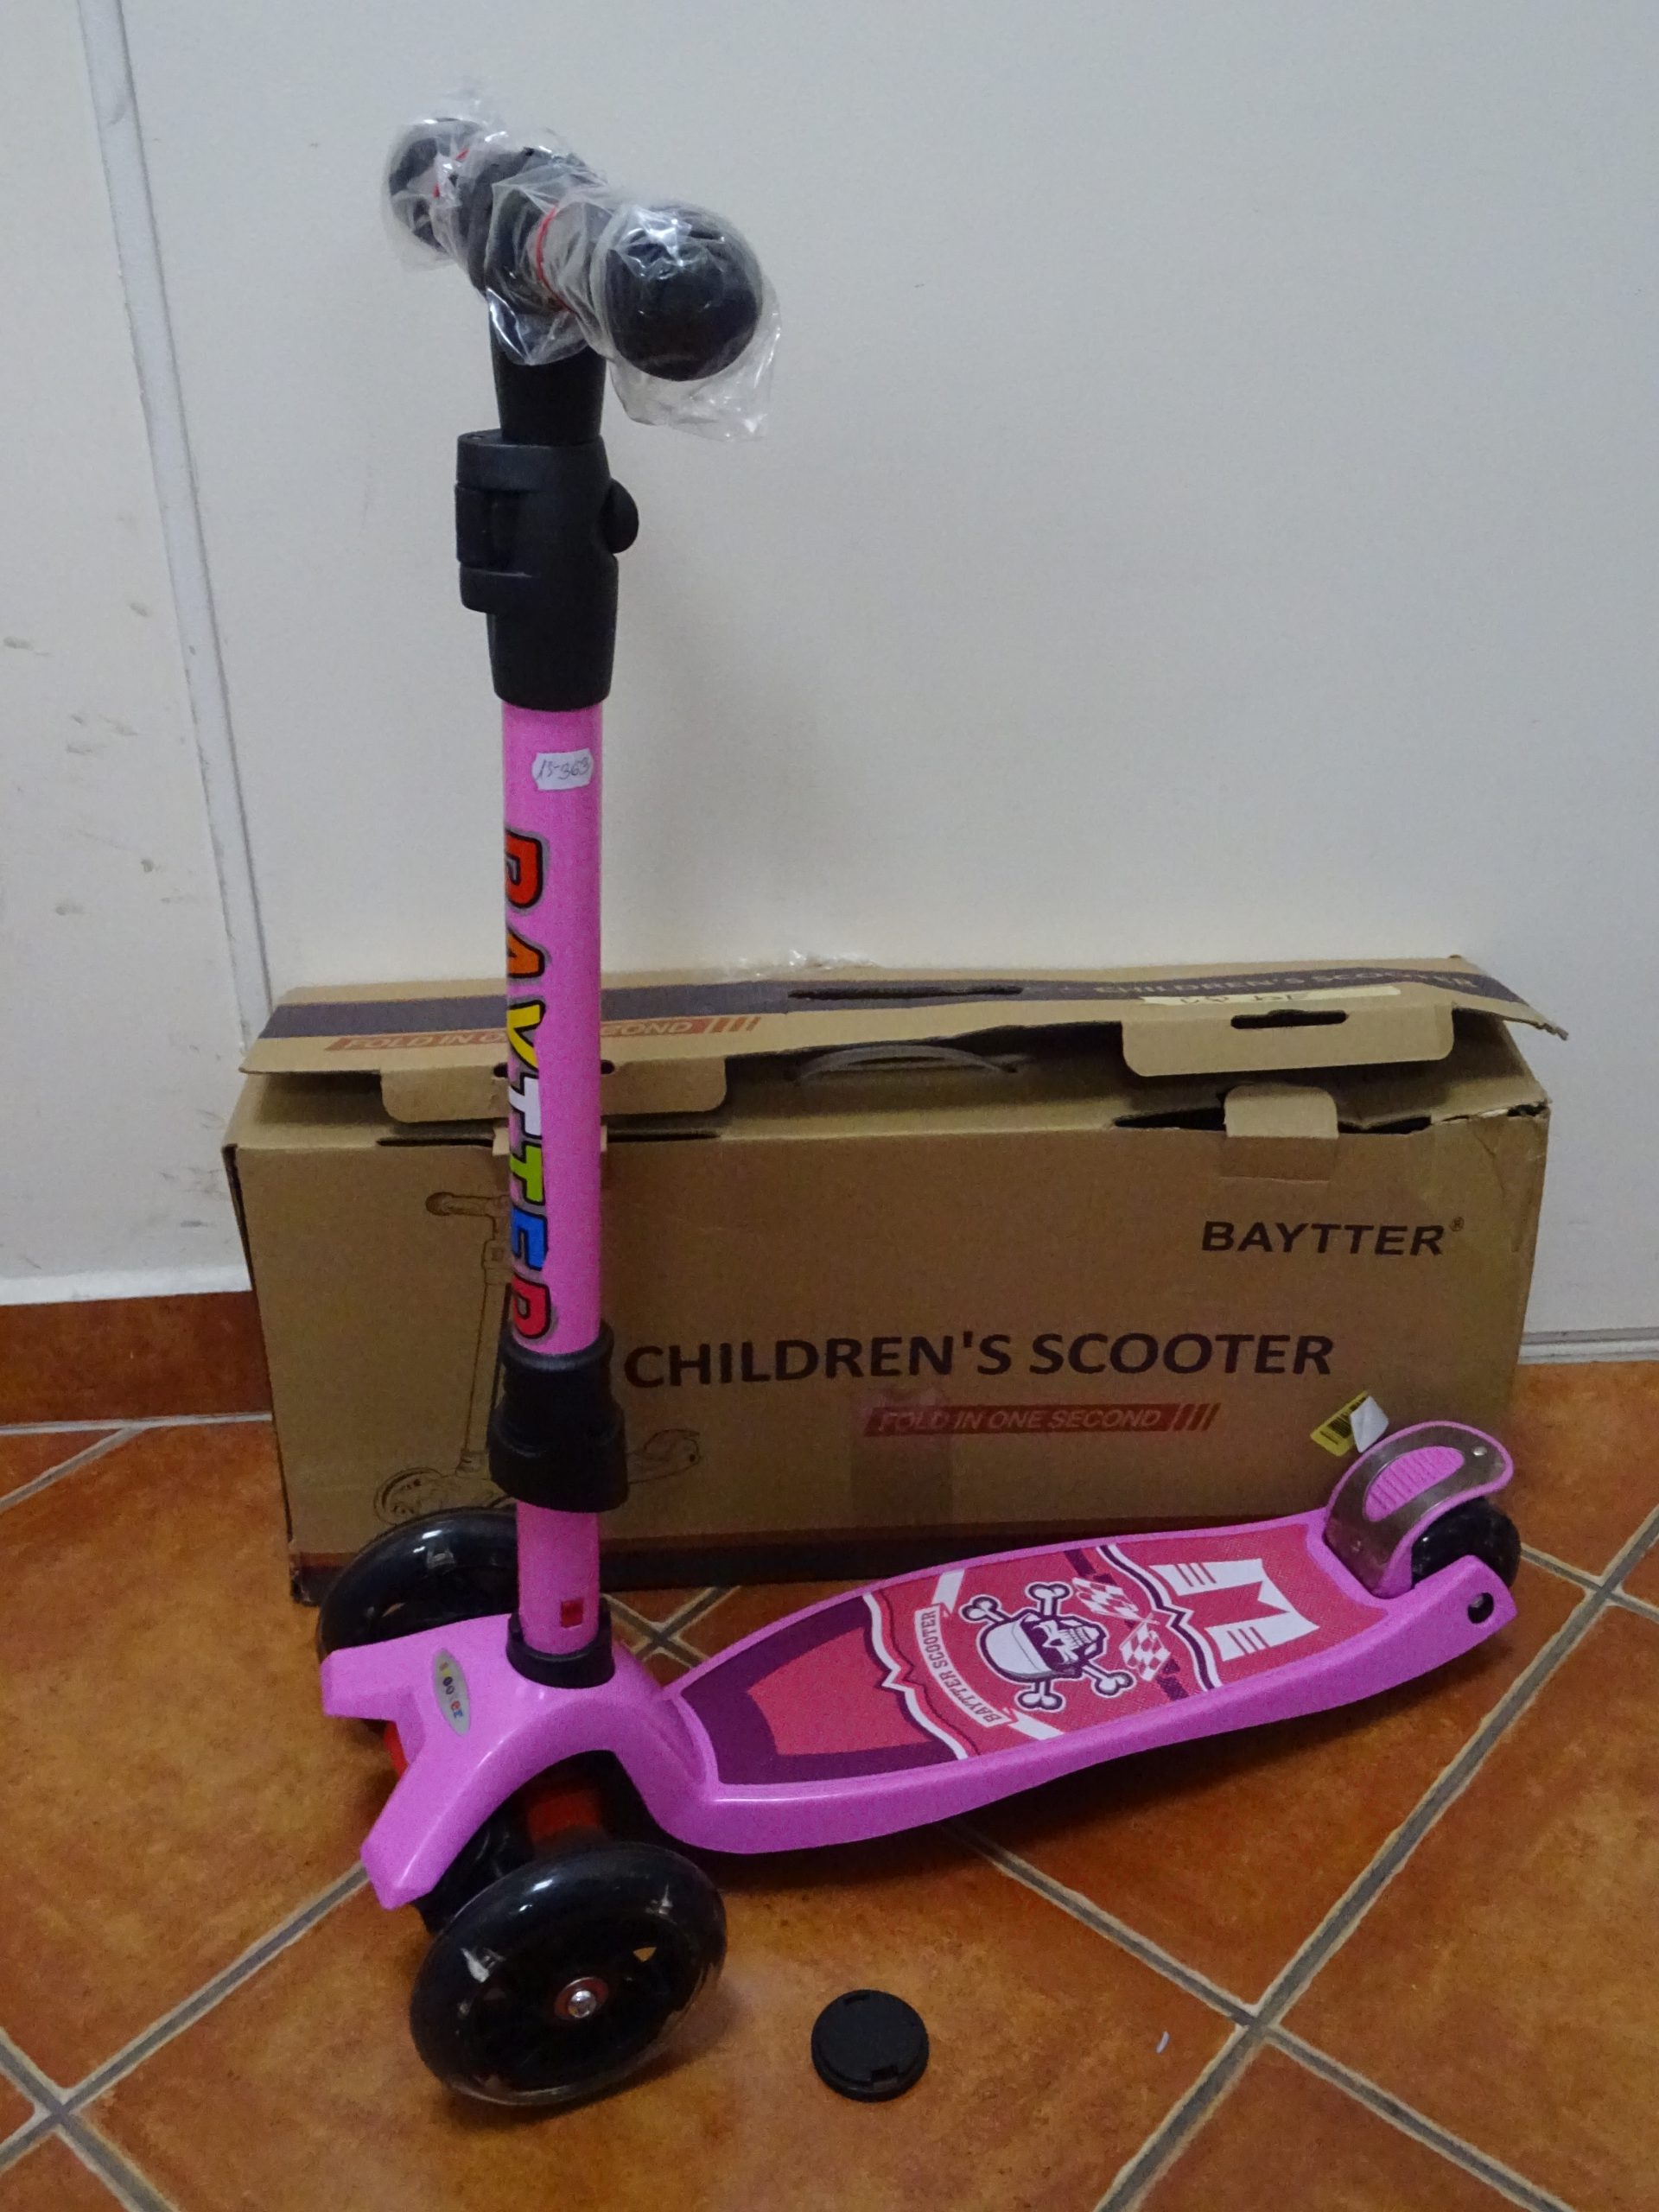 Baytter Háromkerekű Badass Lányos rózsaszín Gyerekroller, kiemelt kép